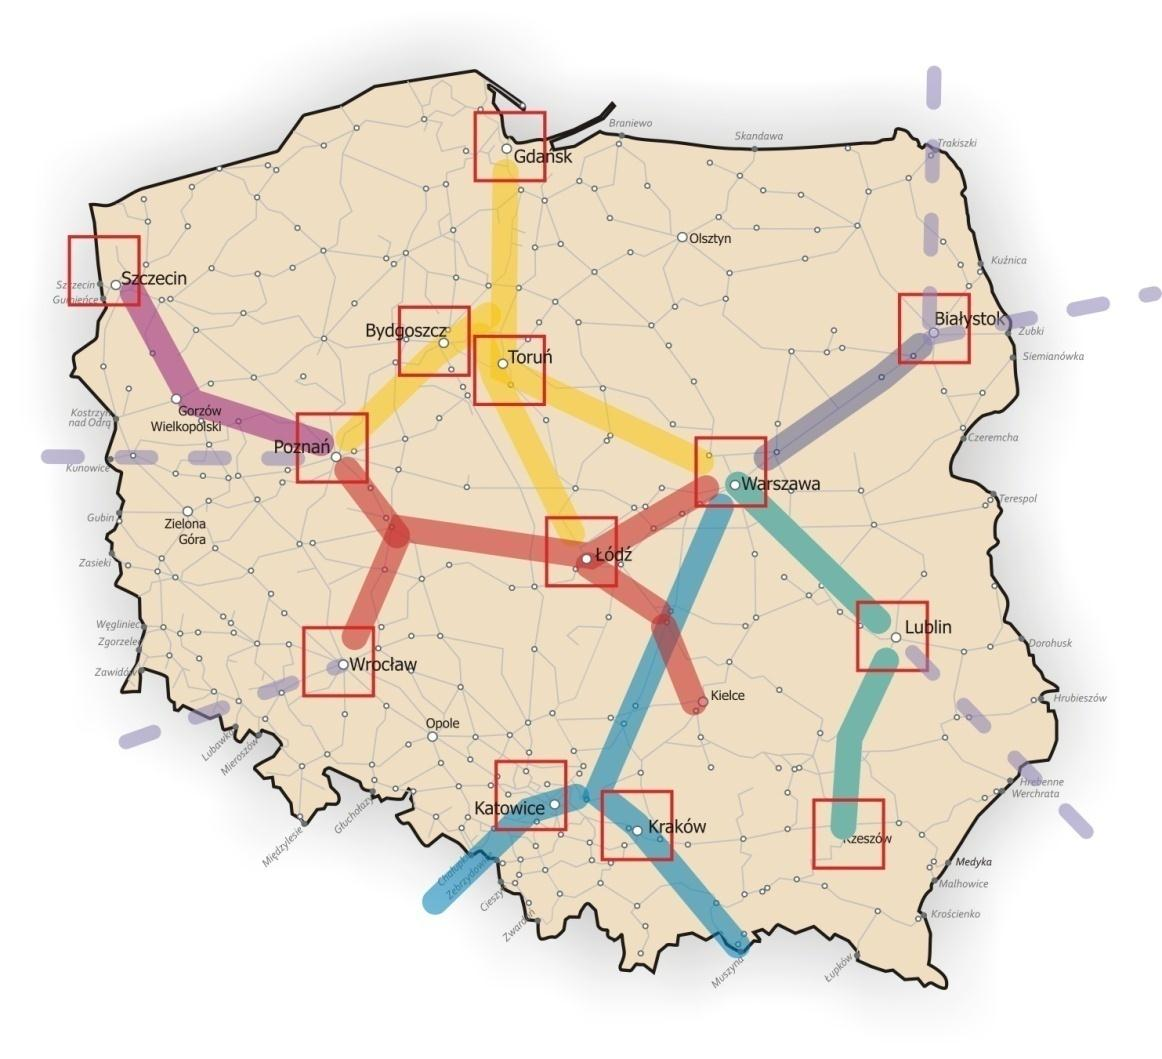 Strategia długoterminowa Polska sieć kolejowa wymaga zasadniczej restrukturyzacji na wzór programu budowy dróg i